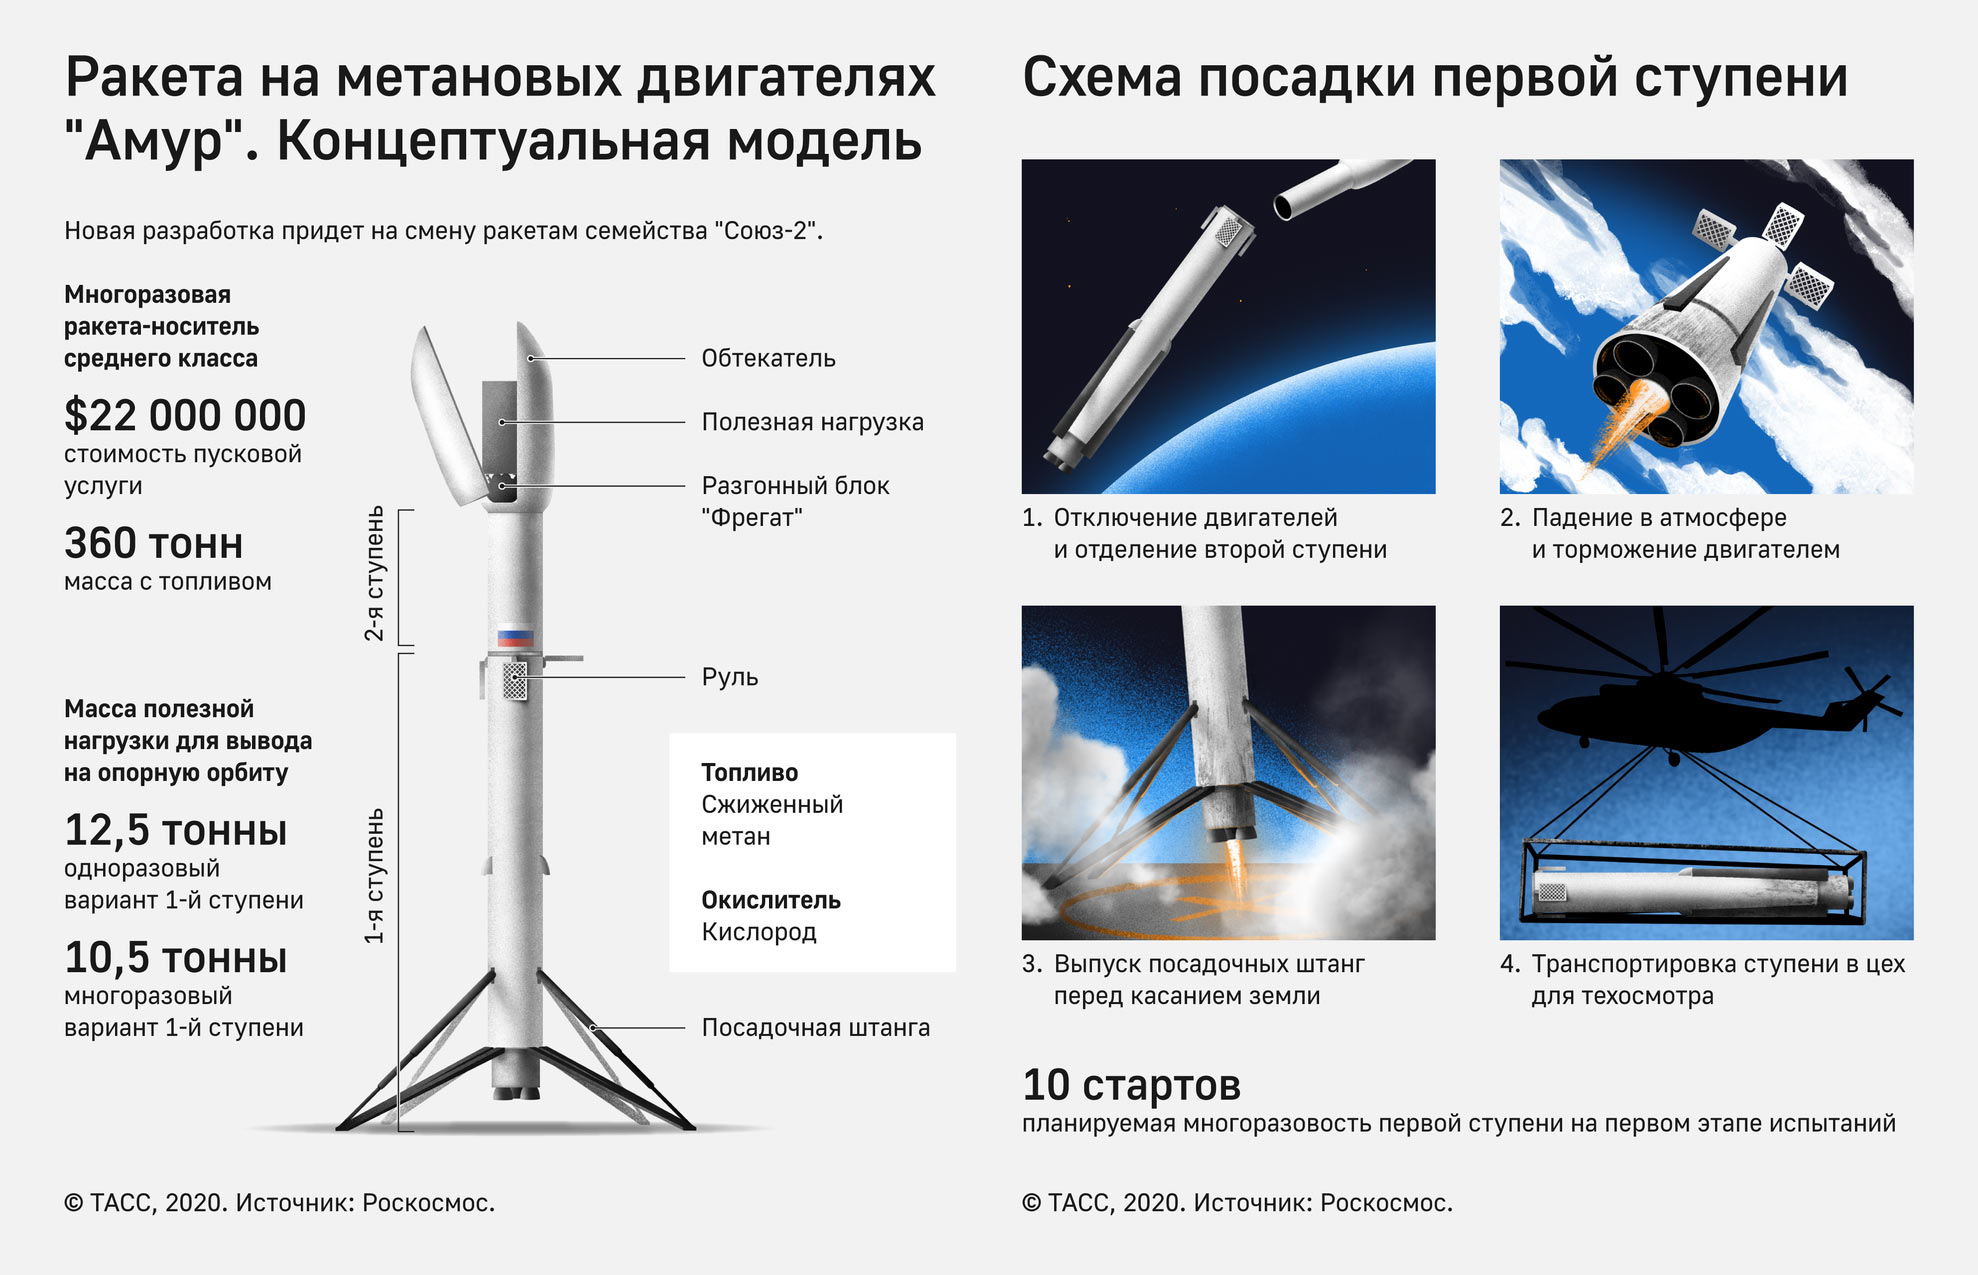 Инфографика © ТАСС / Антон Мизинов, Анастасия Зотова, Сабина Вахитова